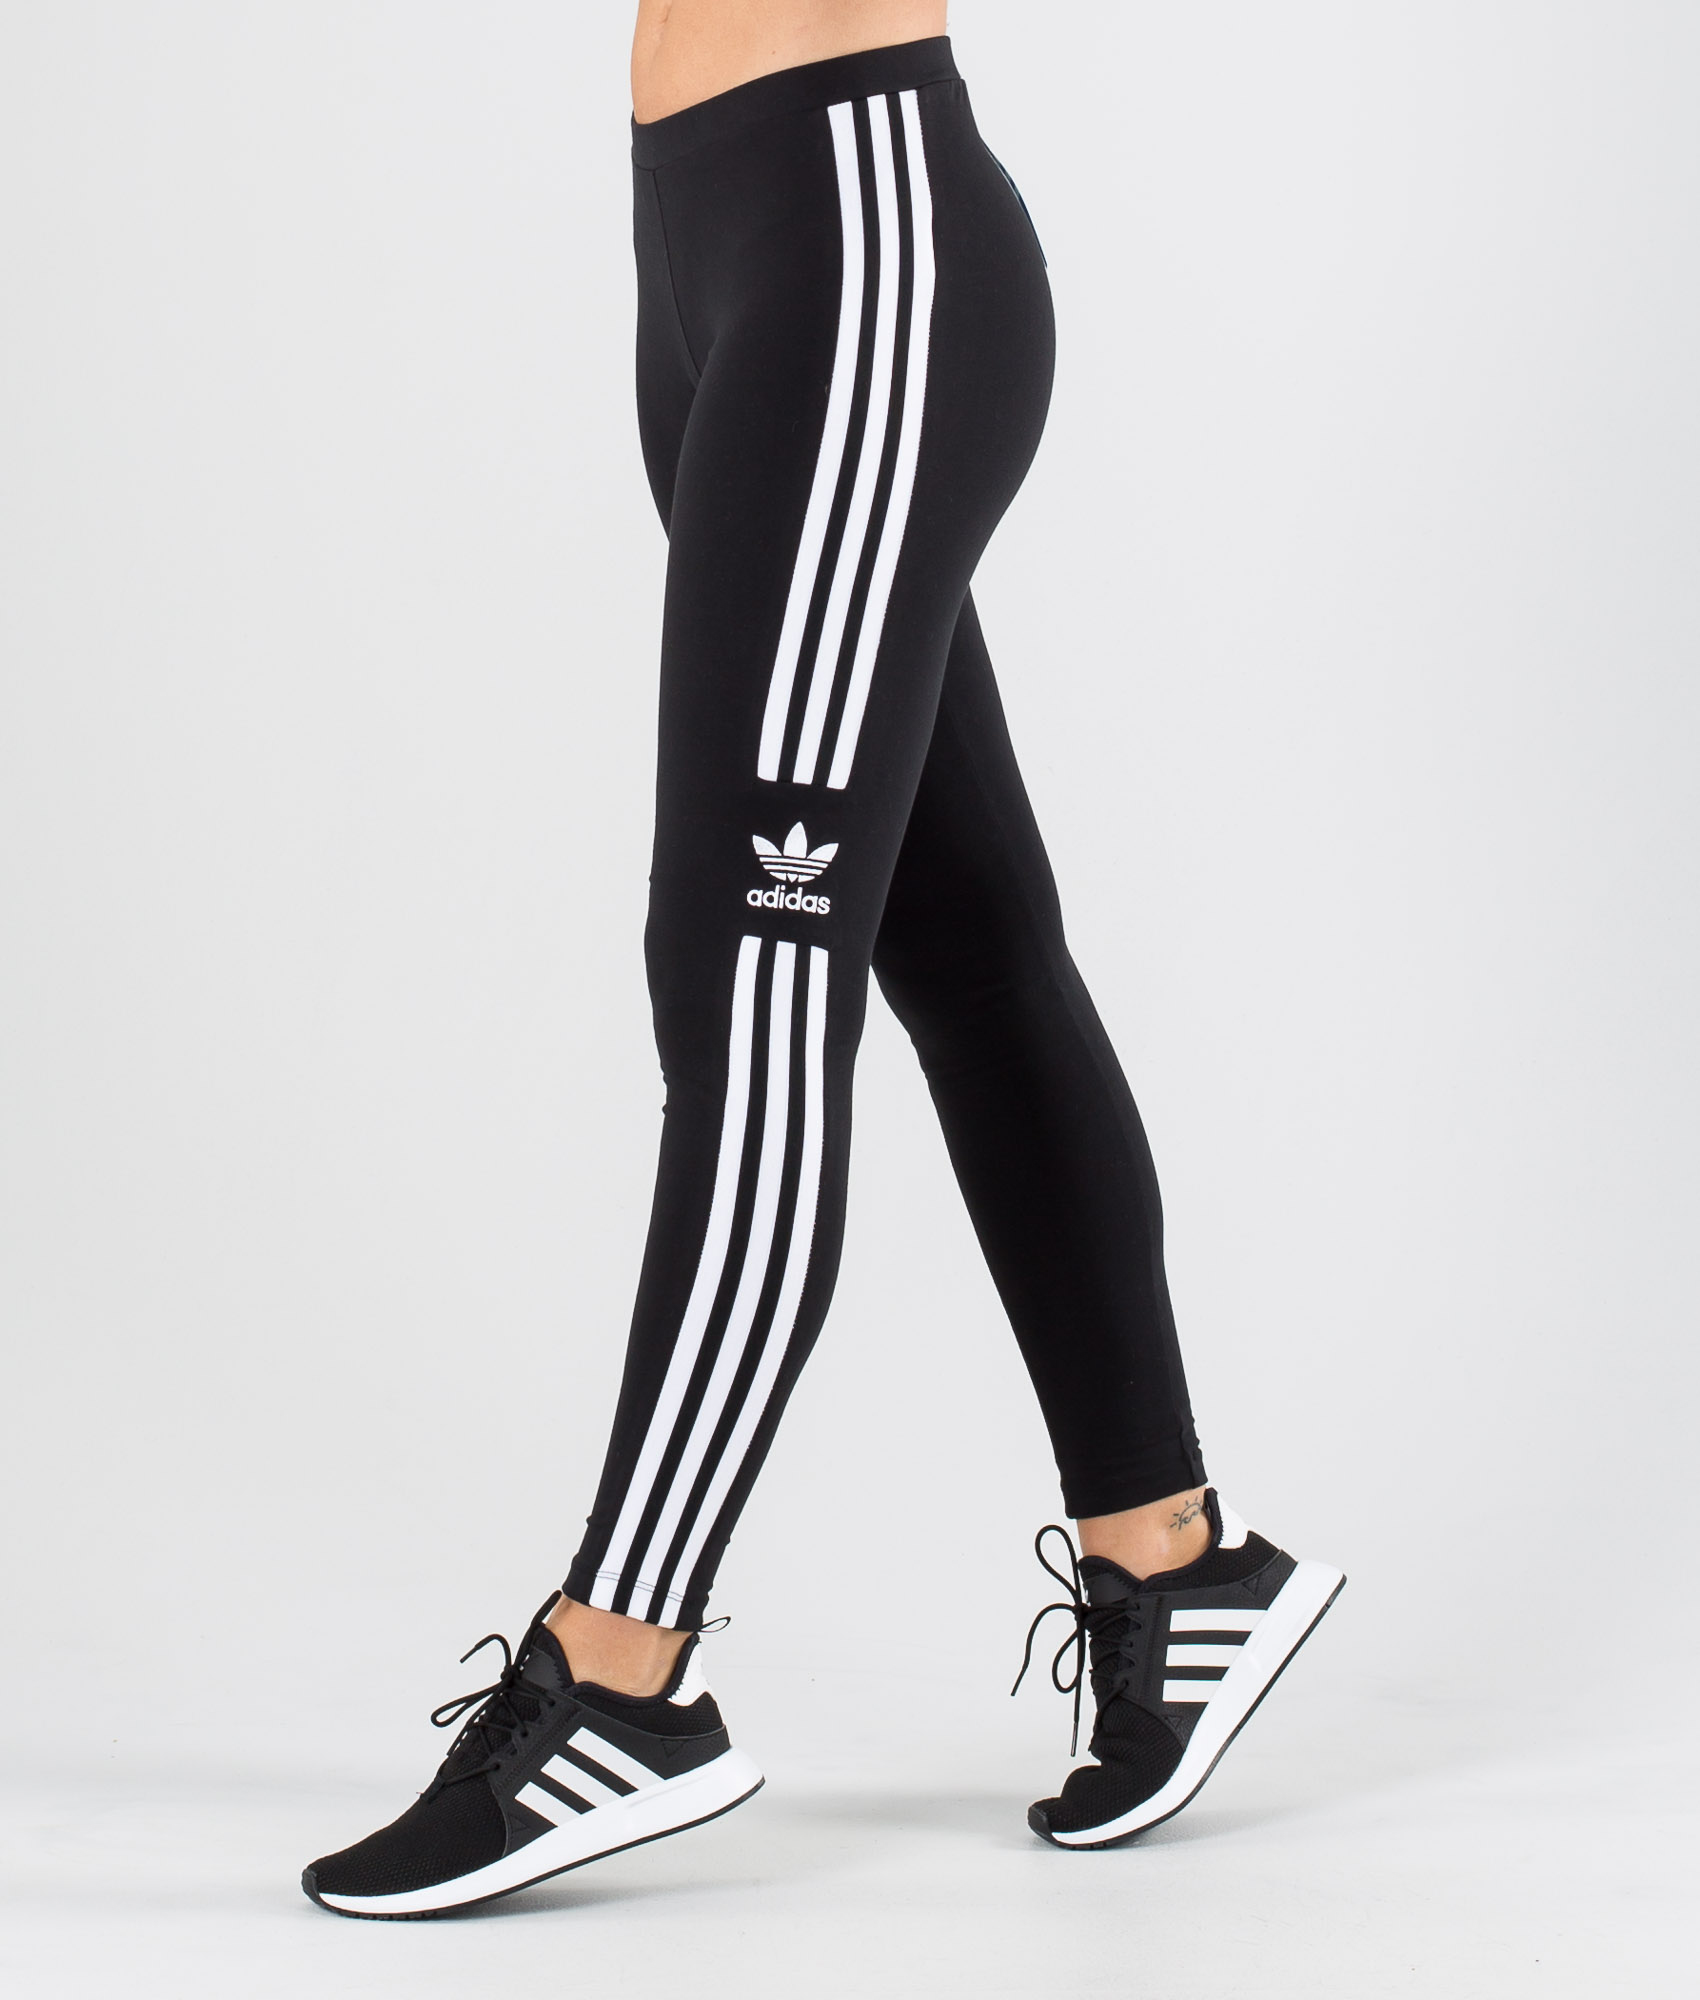 Adidas Originals Trefoil Tight Leggings Black - Ridestore.it